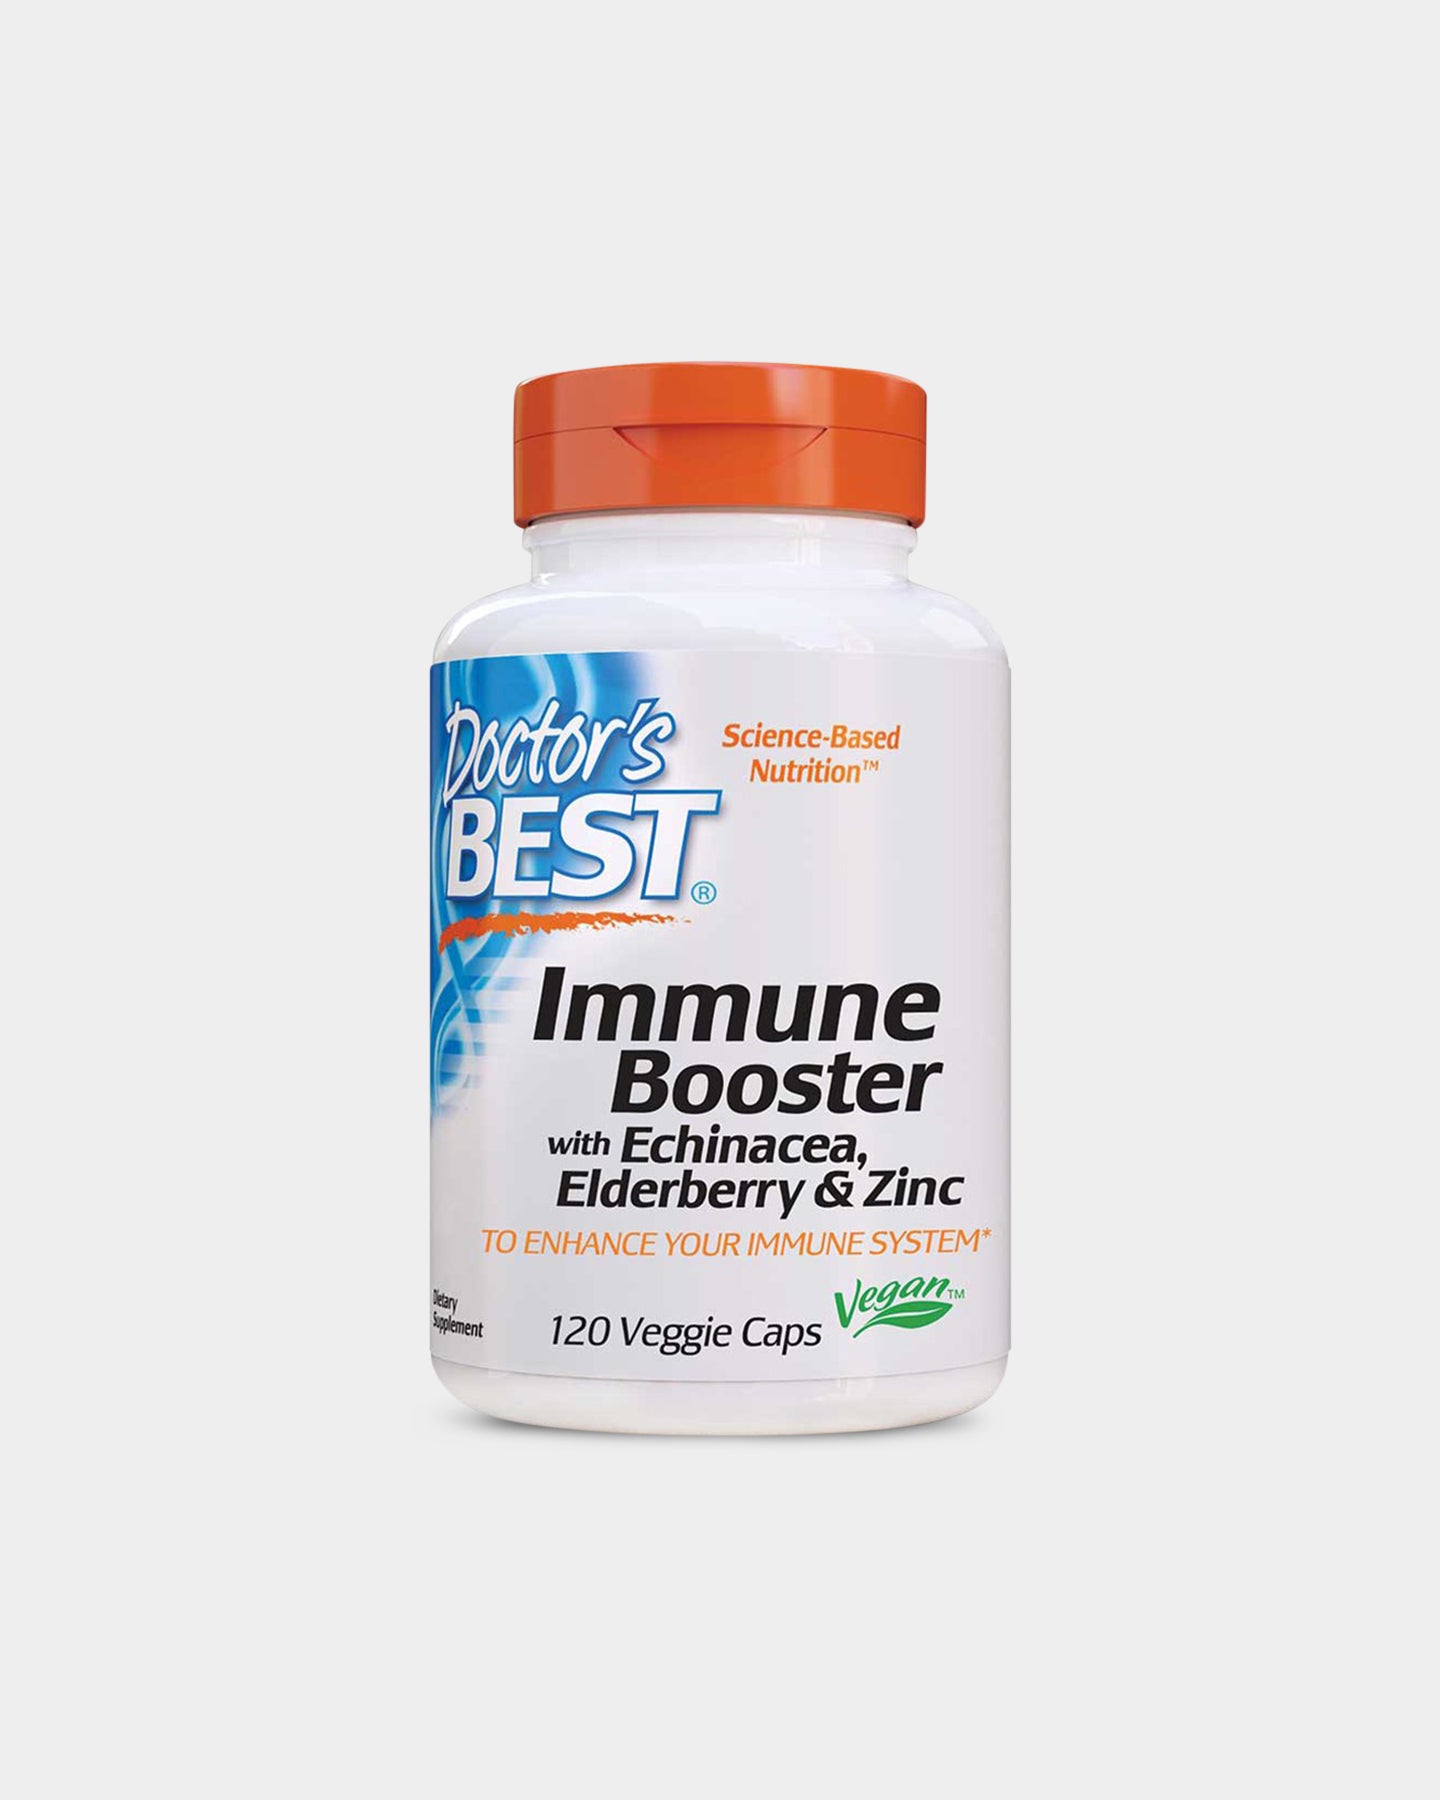 Image of Doctor's Best Immune Booster with Echinacea, Elderberry & Zinc